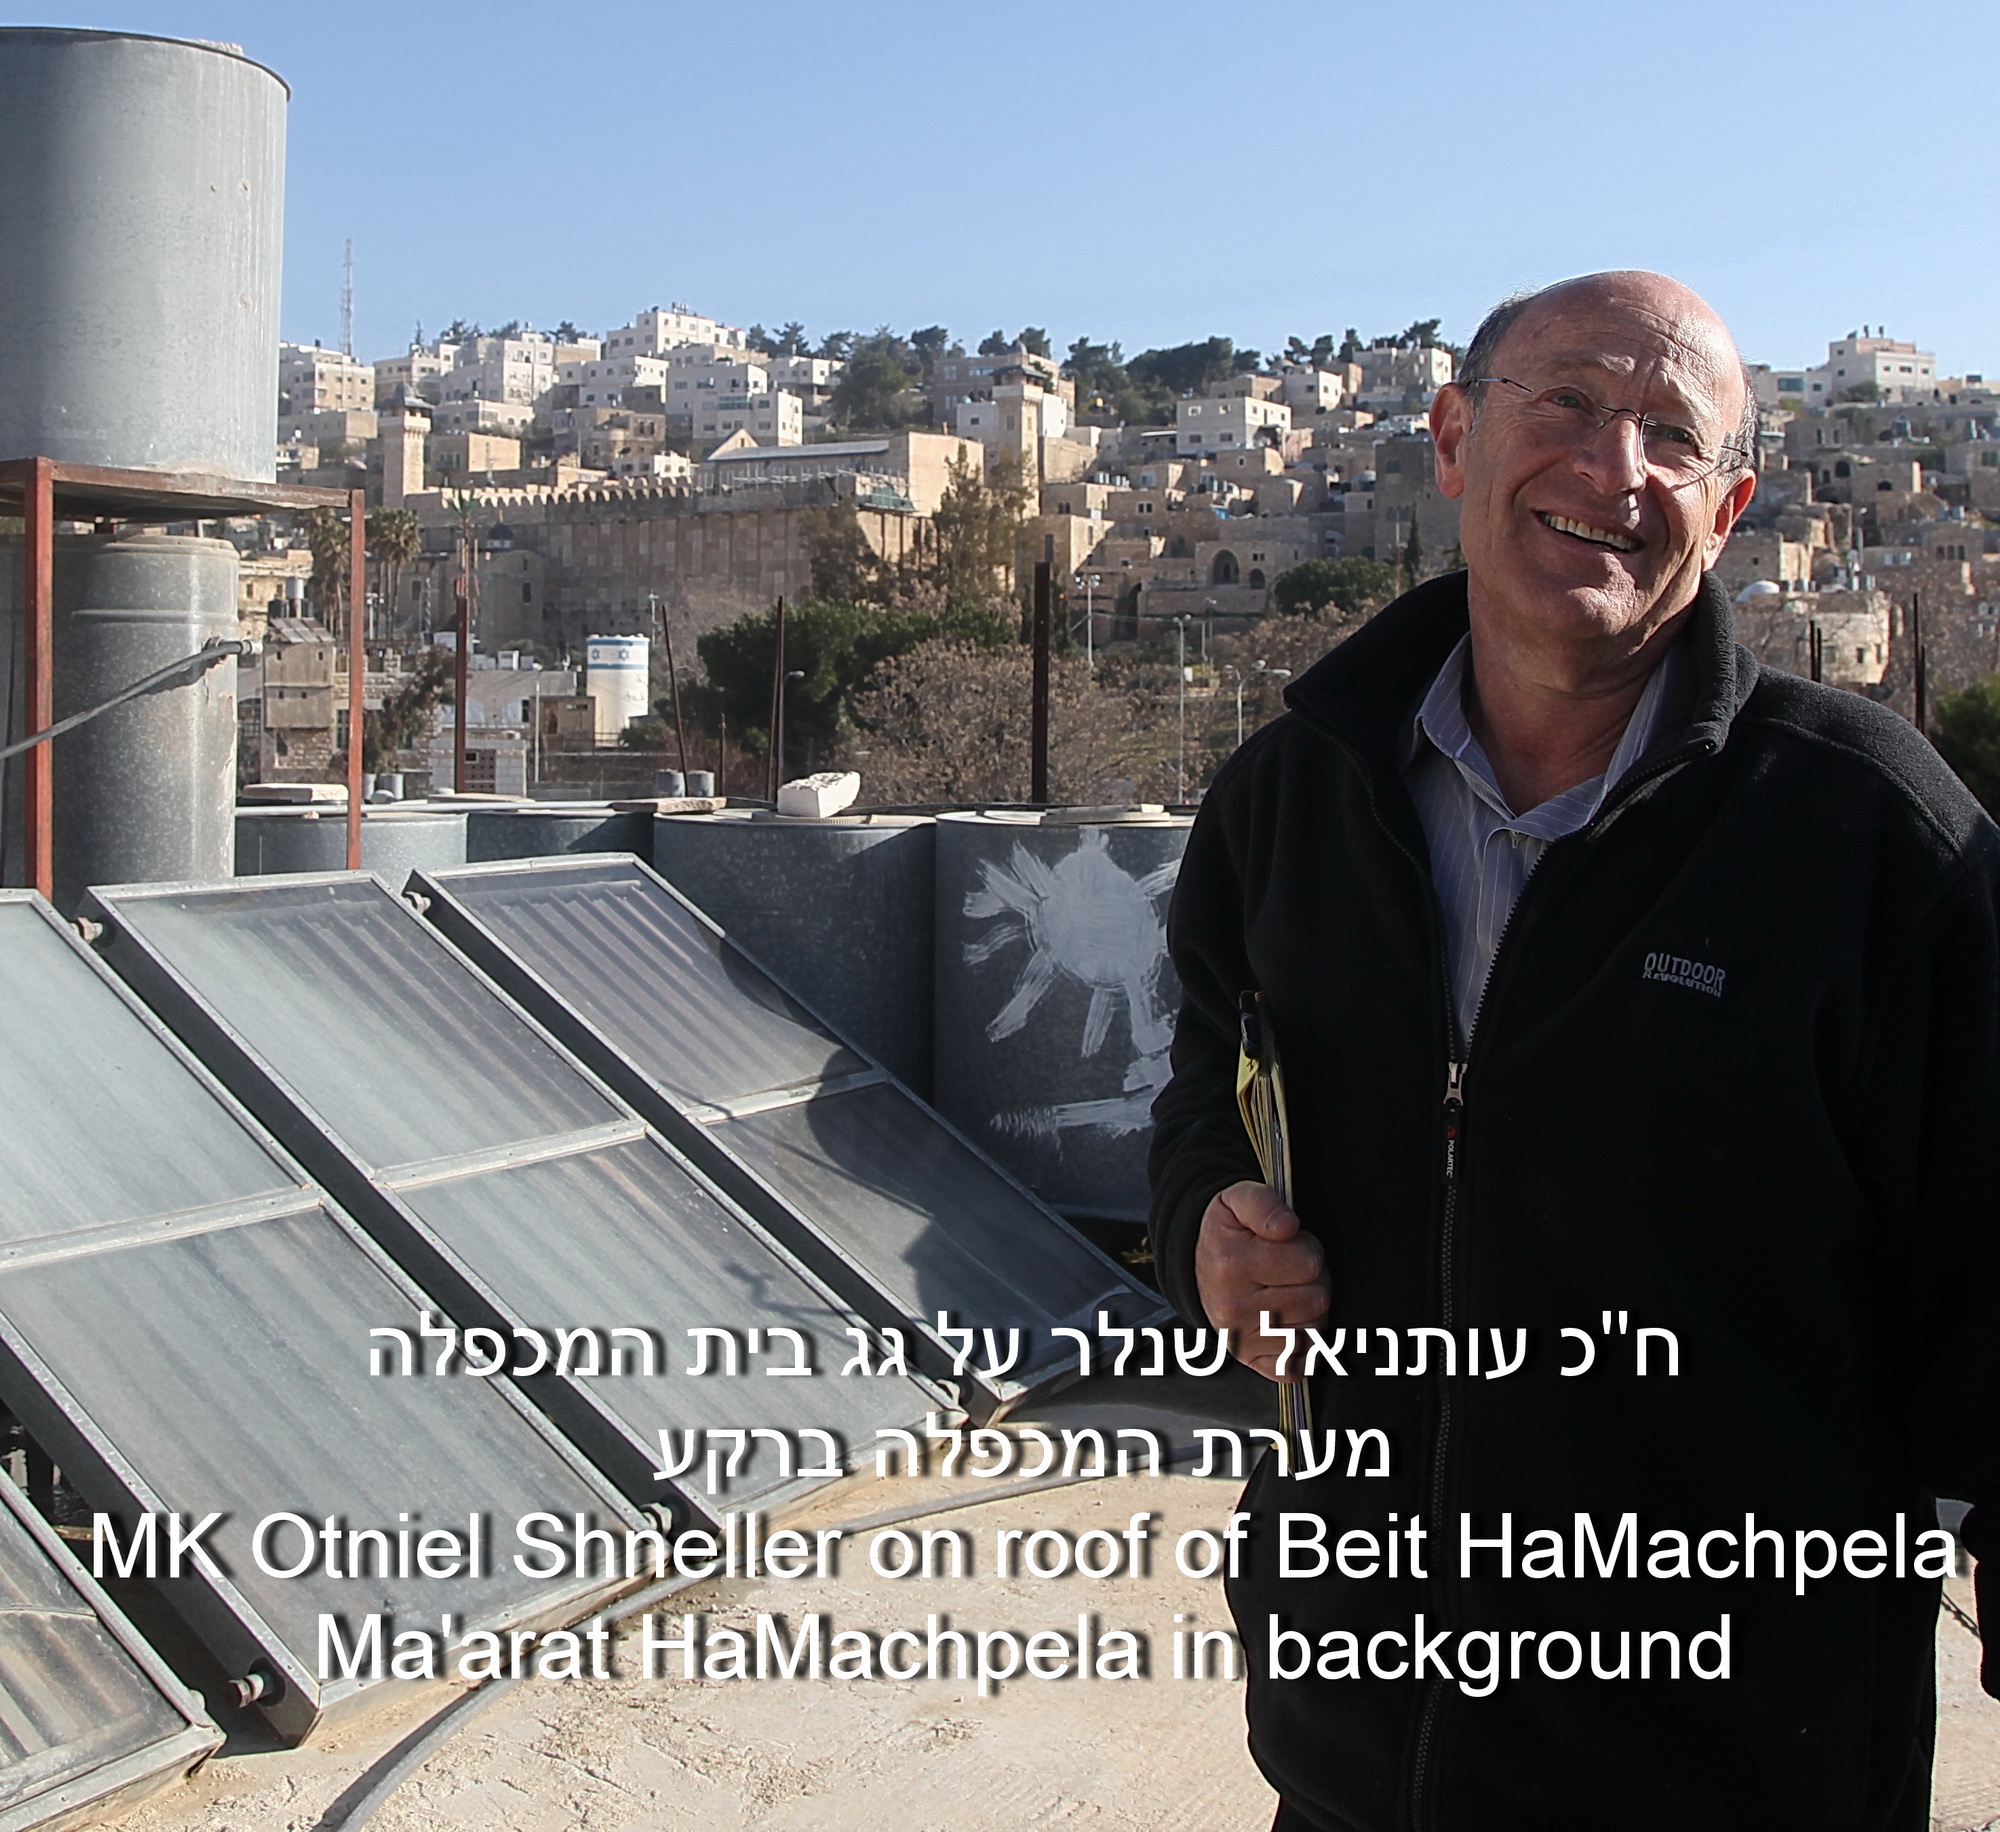 MK Otneil Shneller on the roof of Beit HaMachpela